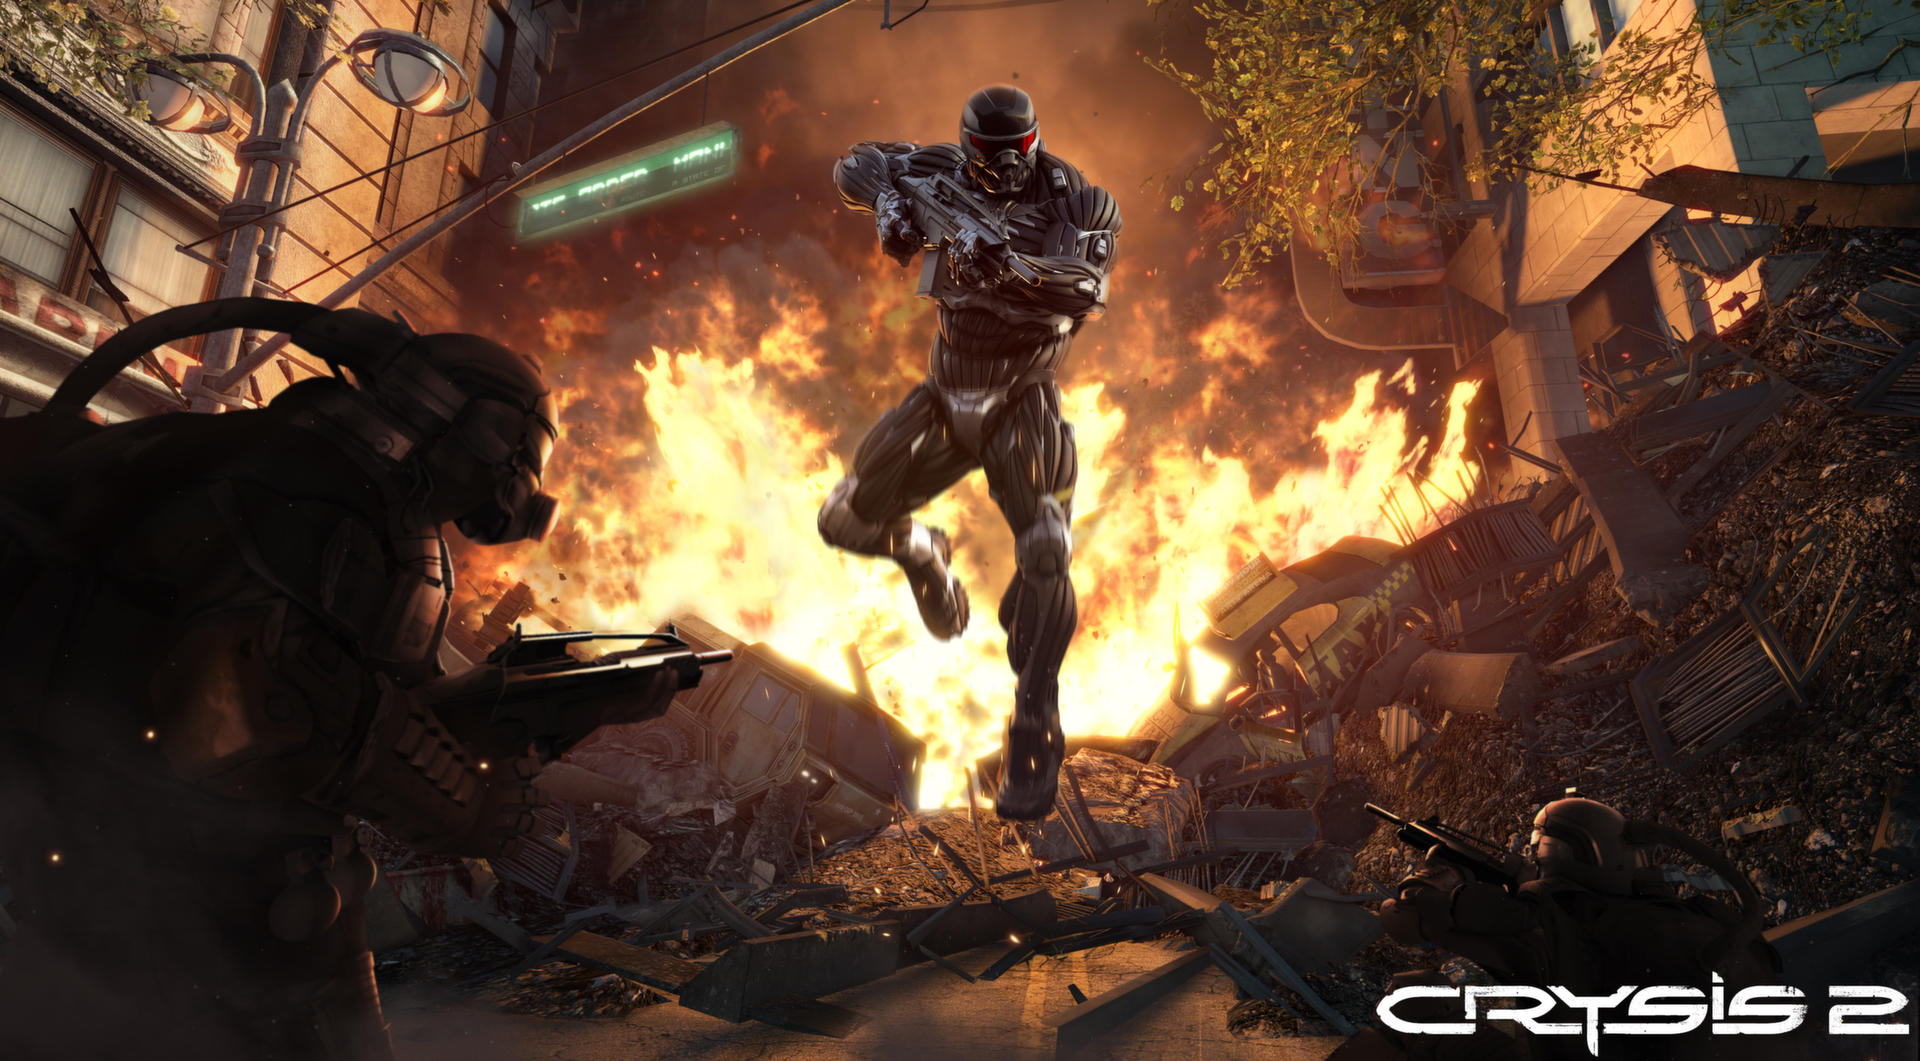 Screenshot 1 of Crysis 2 - ការបោះពុម្ពអតិបរមា 